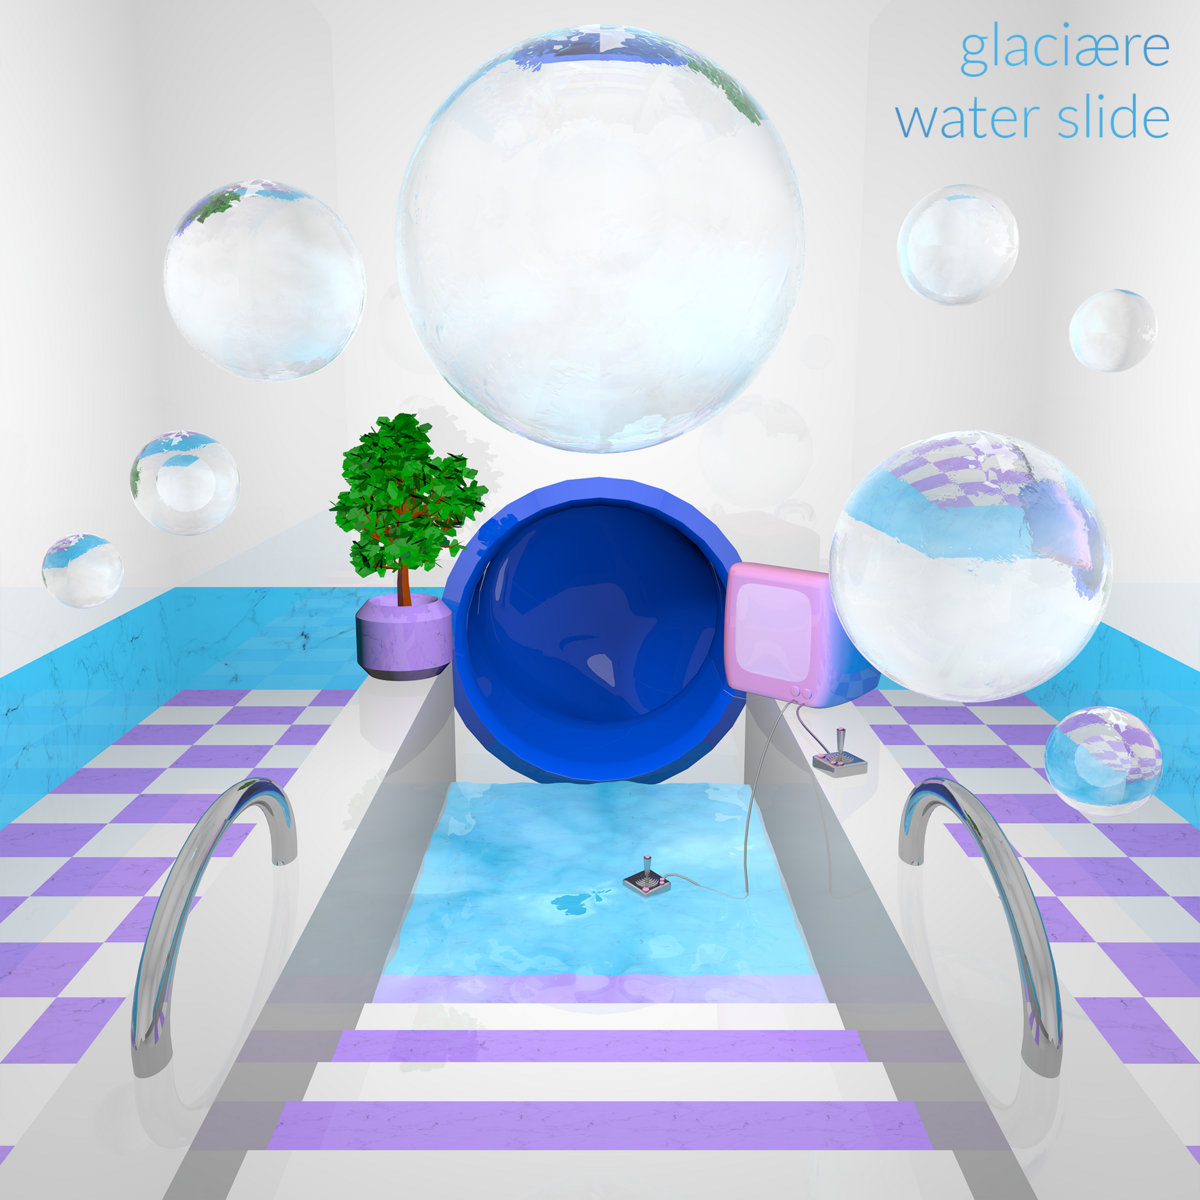 Glaciaere — Shishi Odoshi cover artwork